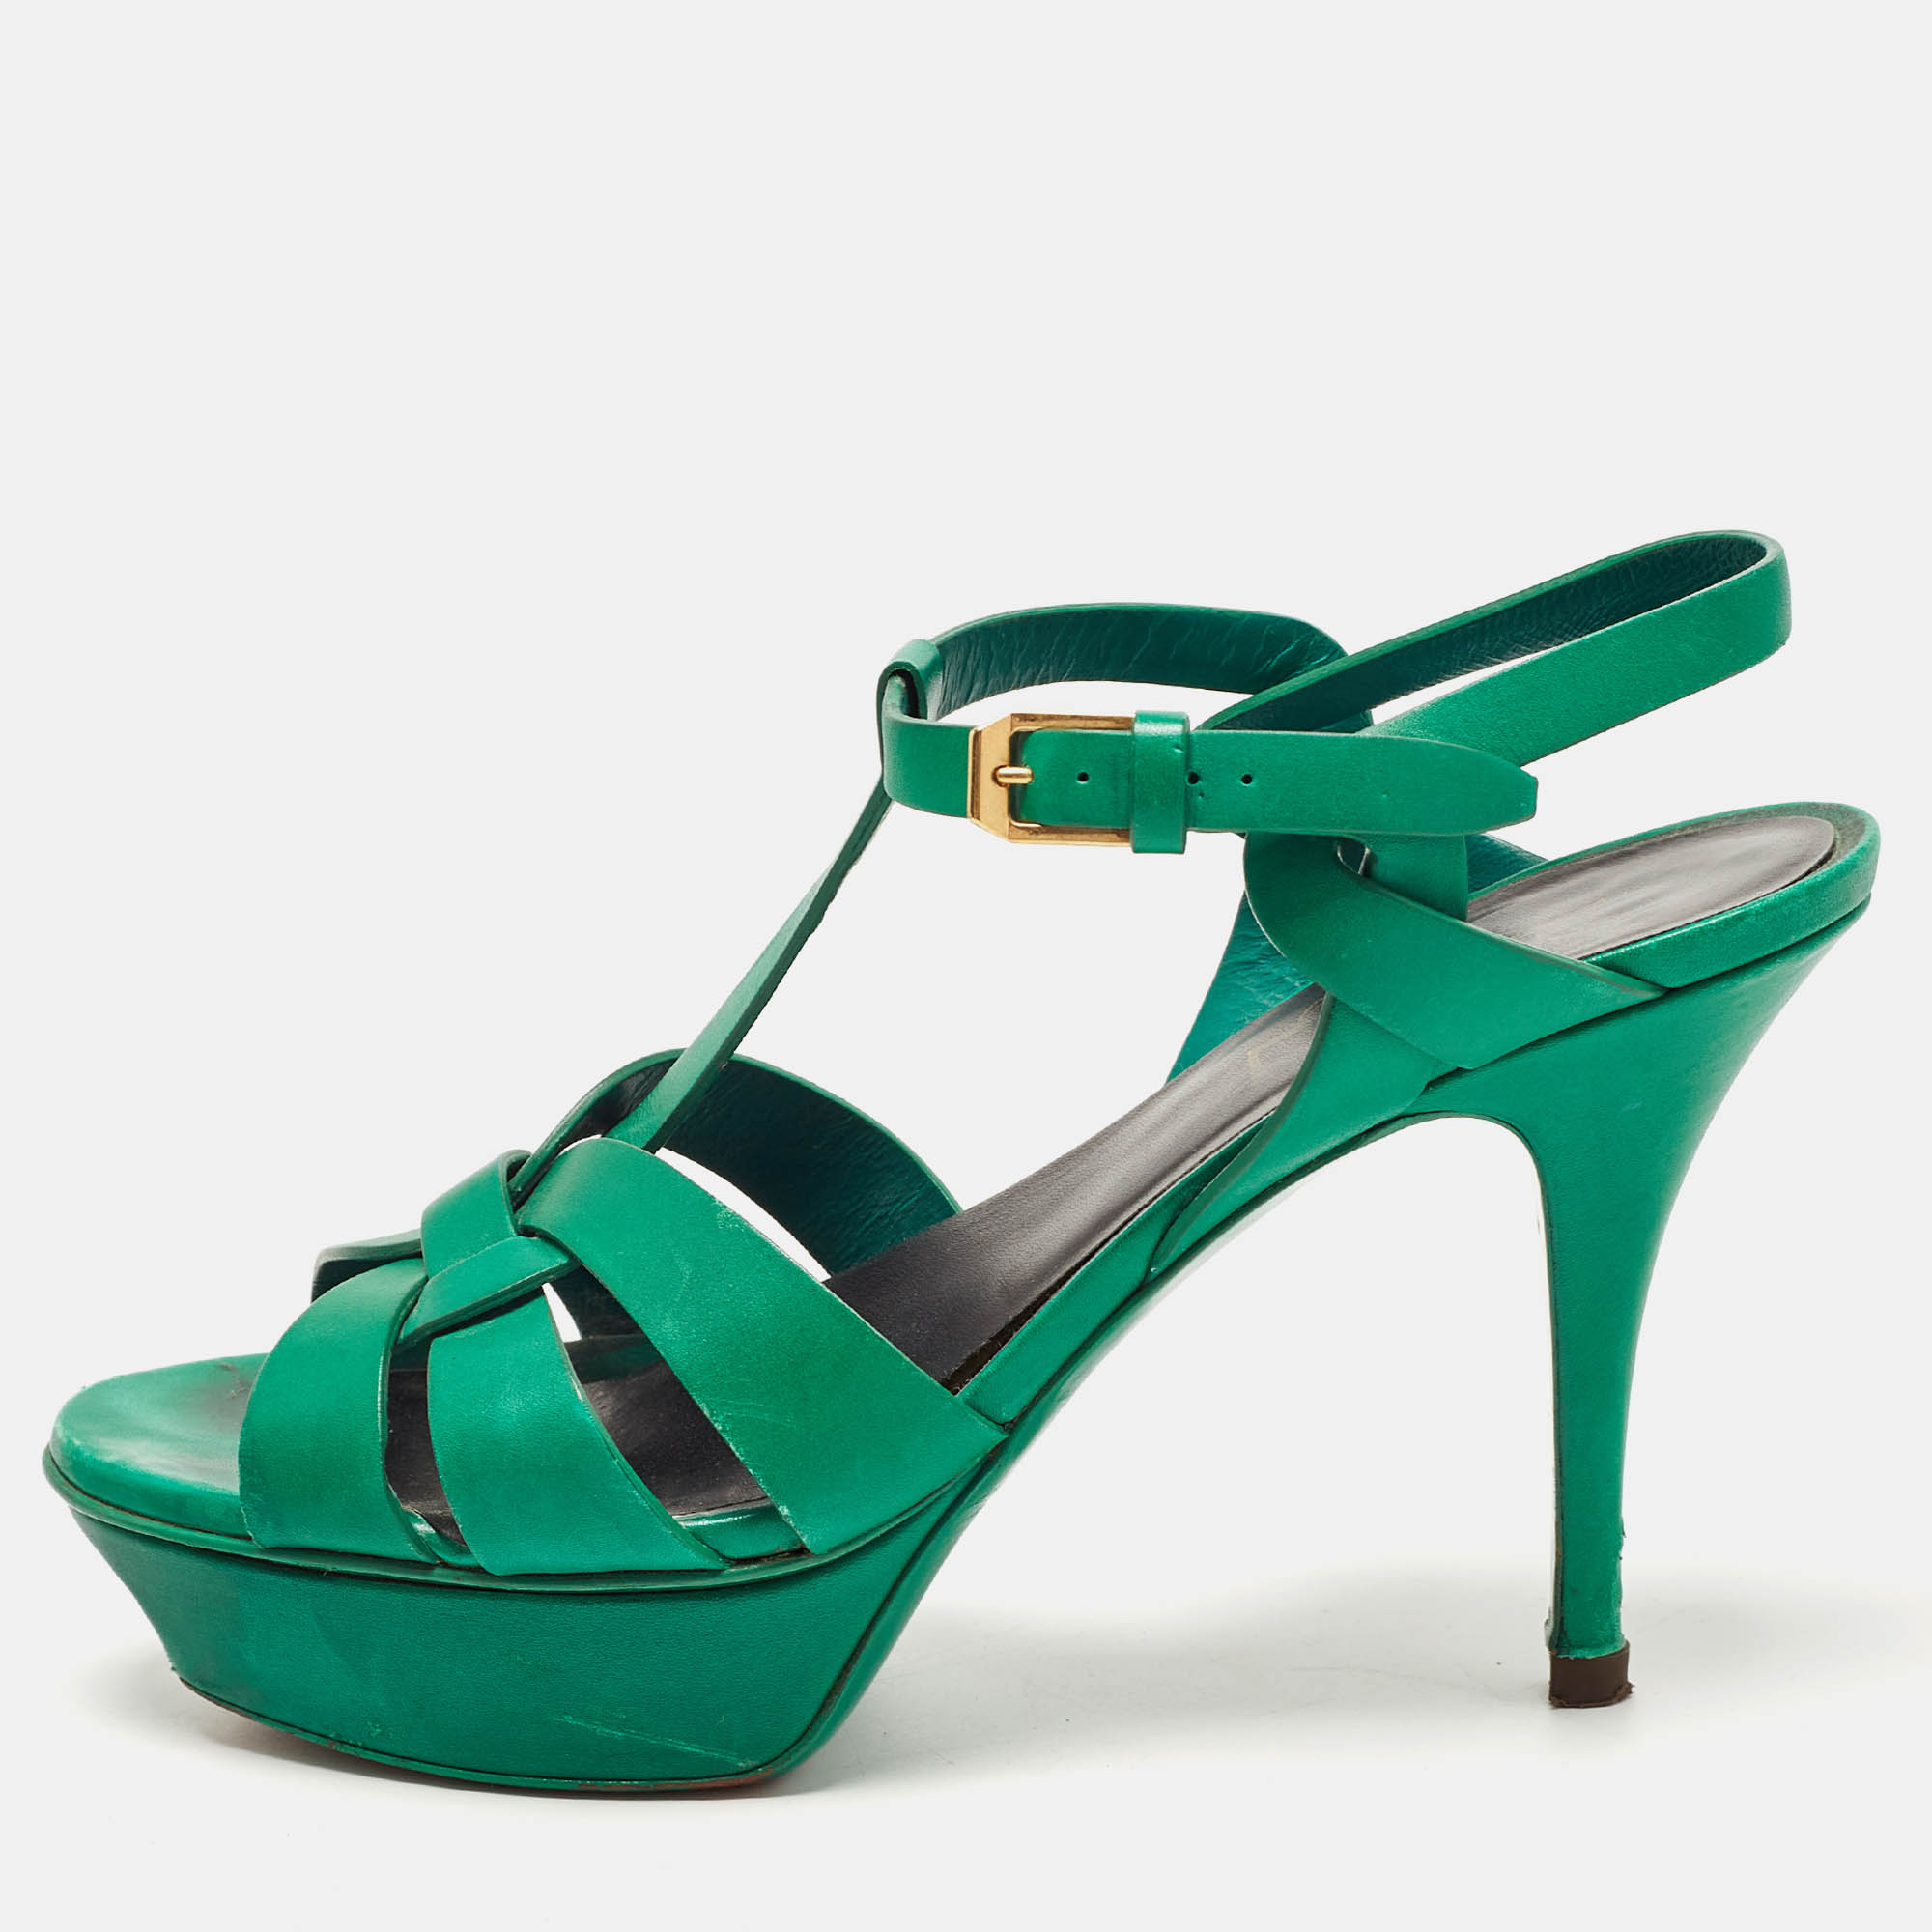 Saint laurent paris saint laurent green leather tribute sandals size 38